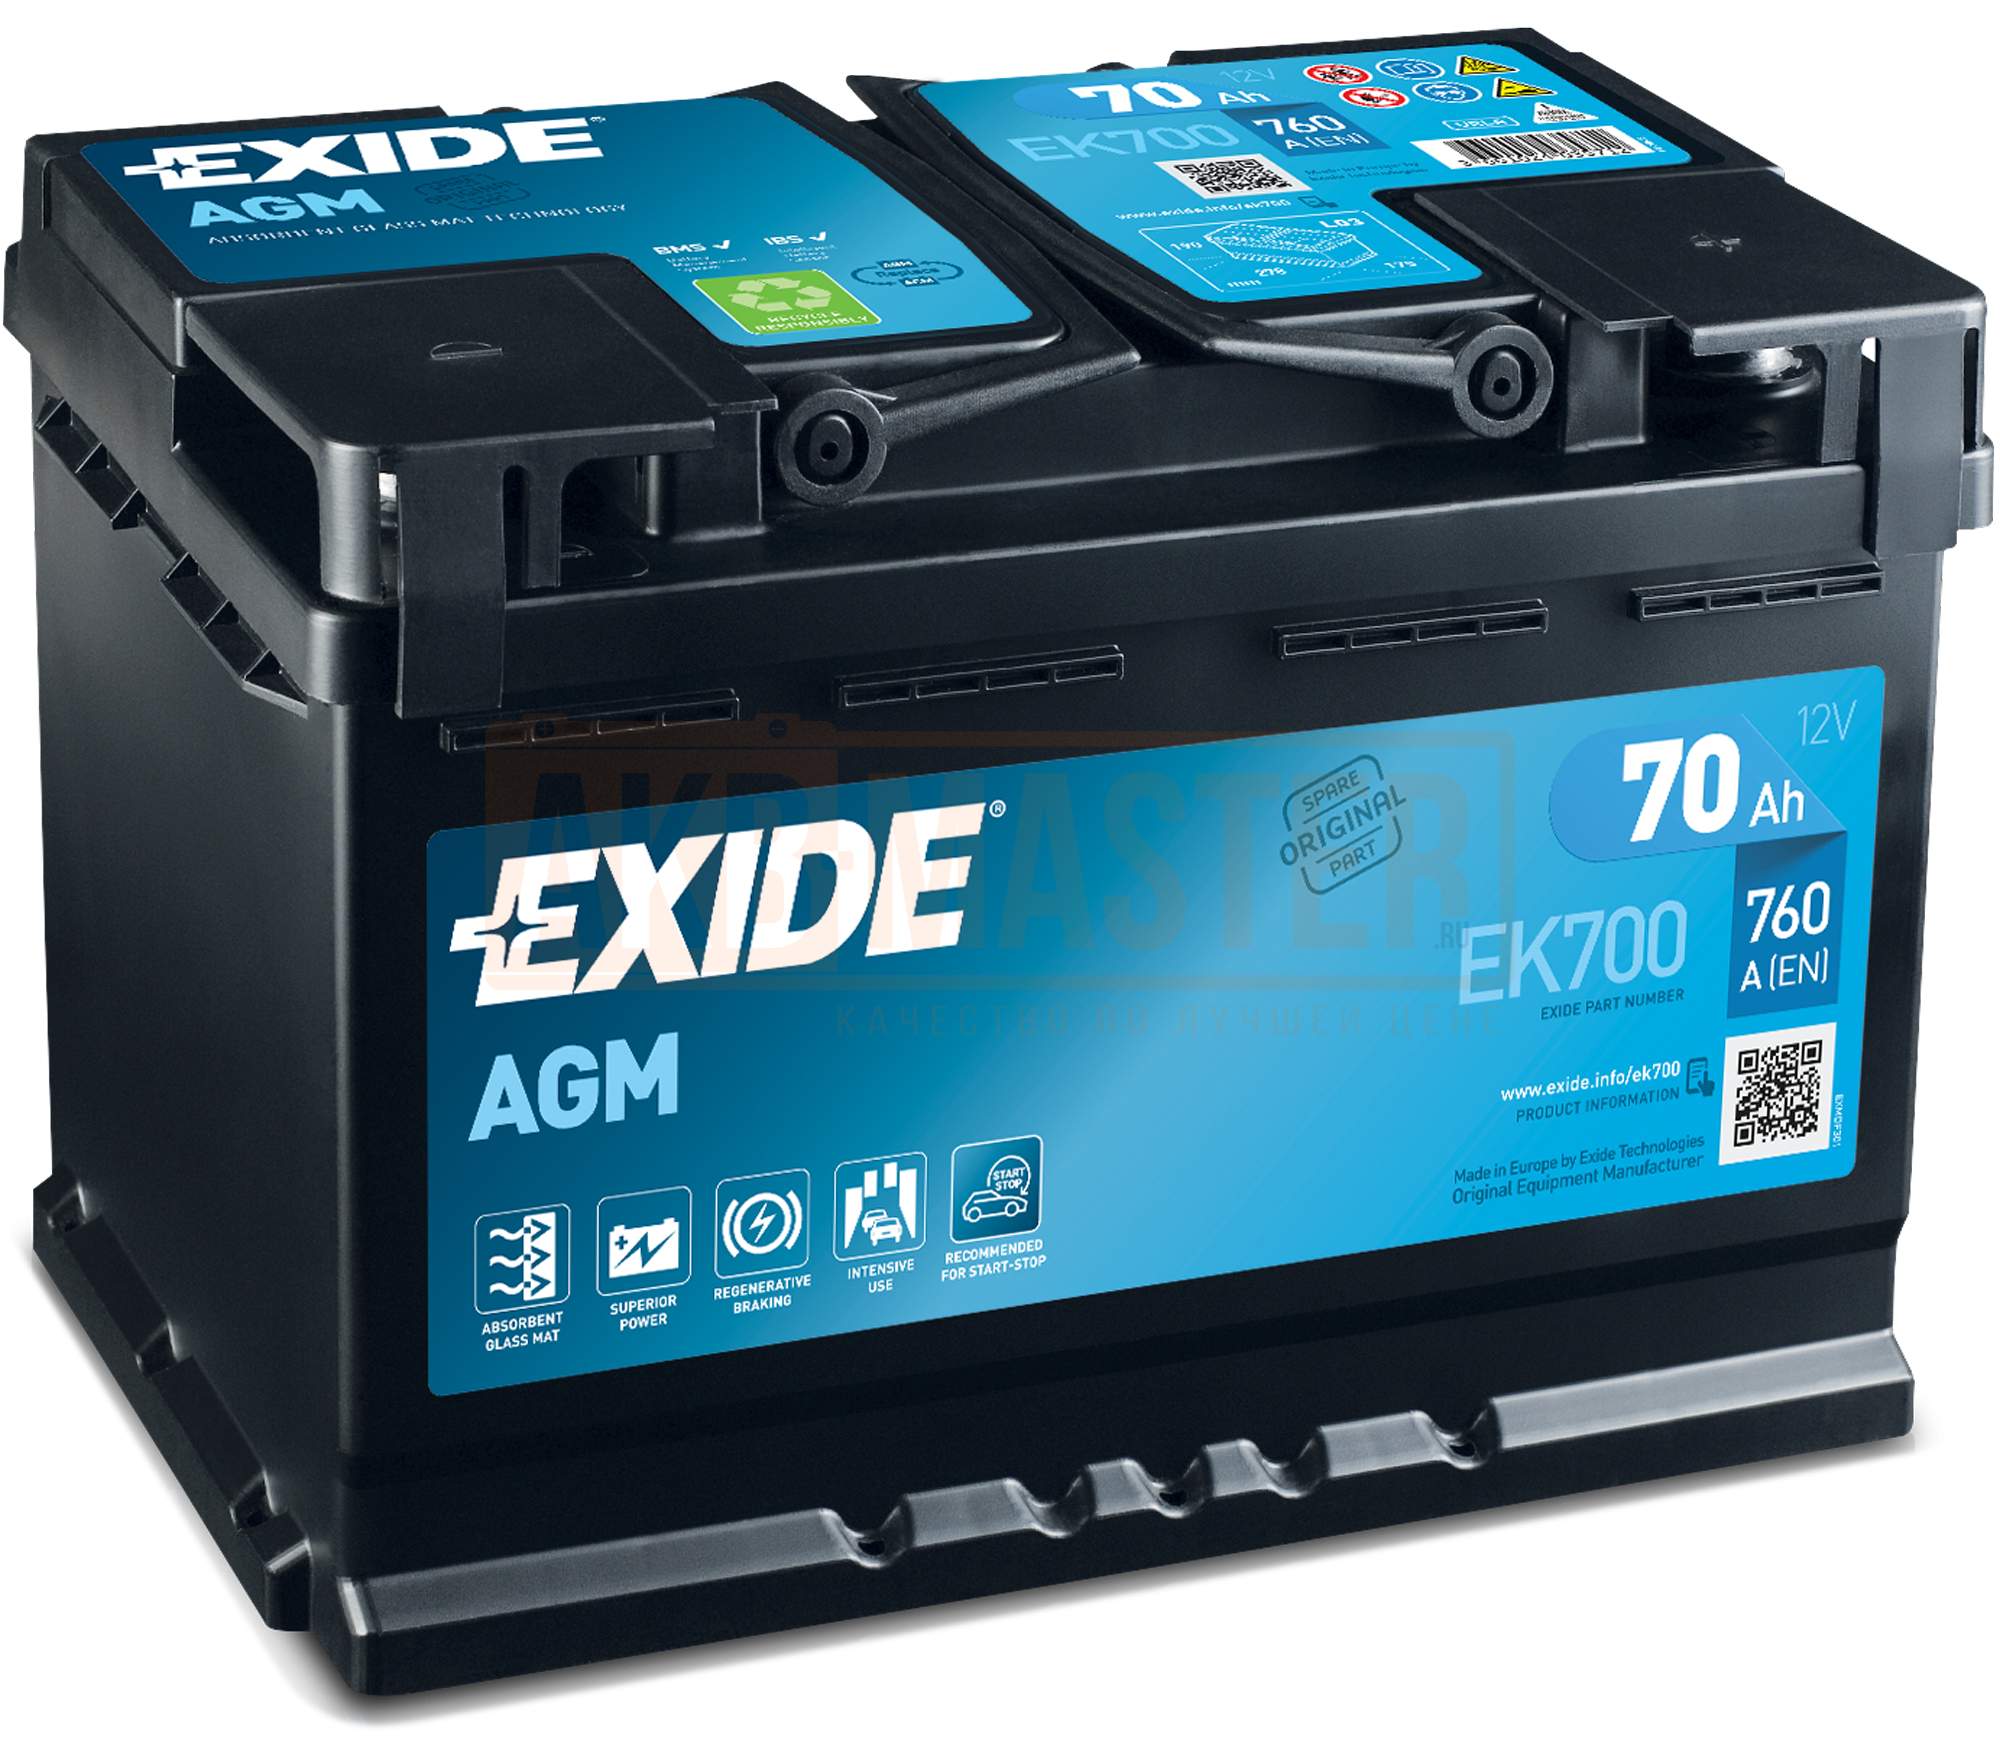 Аккумулятор start agm. Exide el700 аккумулятор. Exide start-stop AGM ek700. Аккумулятор Exide Excell eb604. Аккумулятор Exide AGM 70ah.